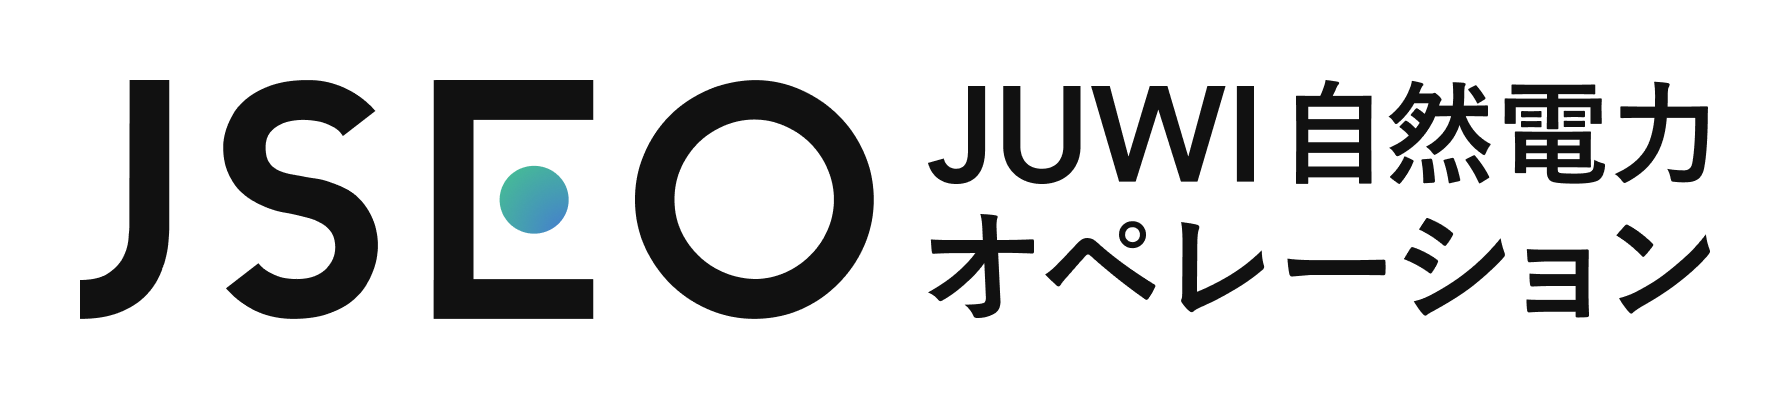 JUWI自然電力オペレーション株式会社